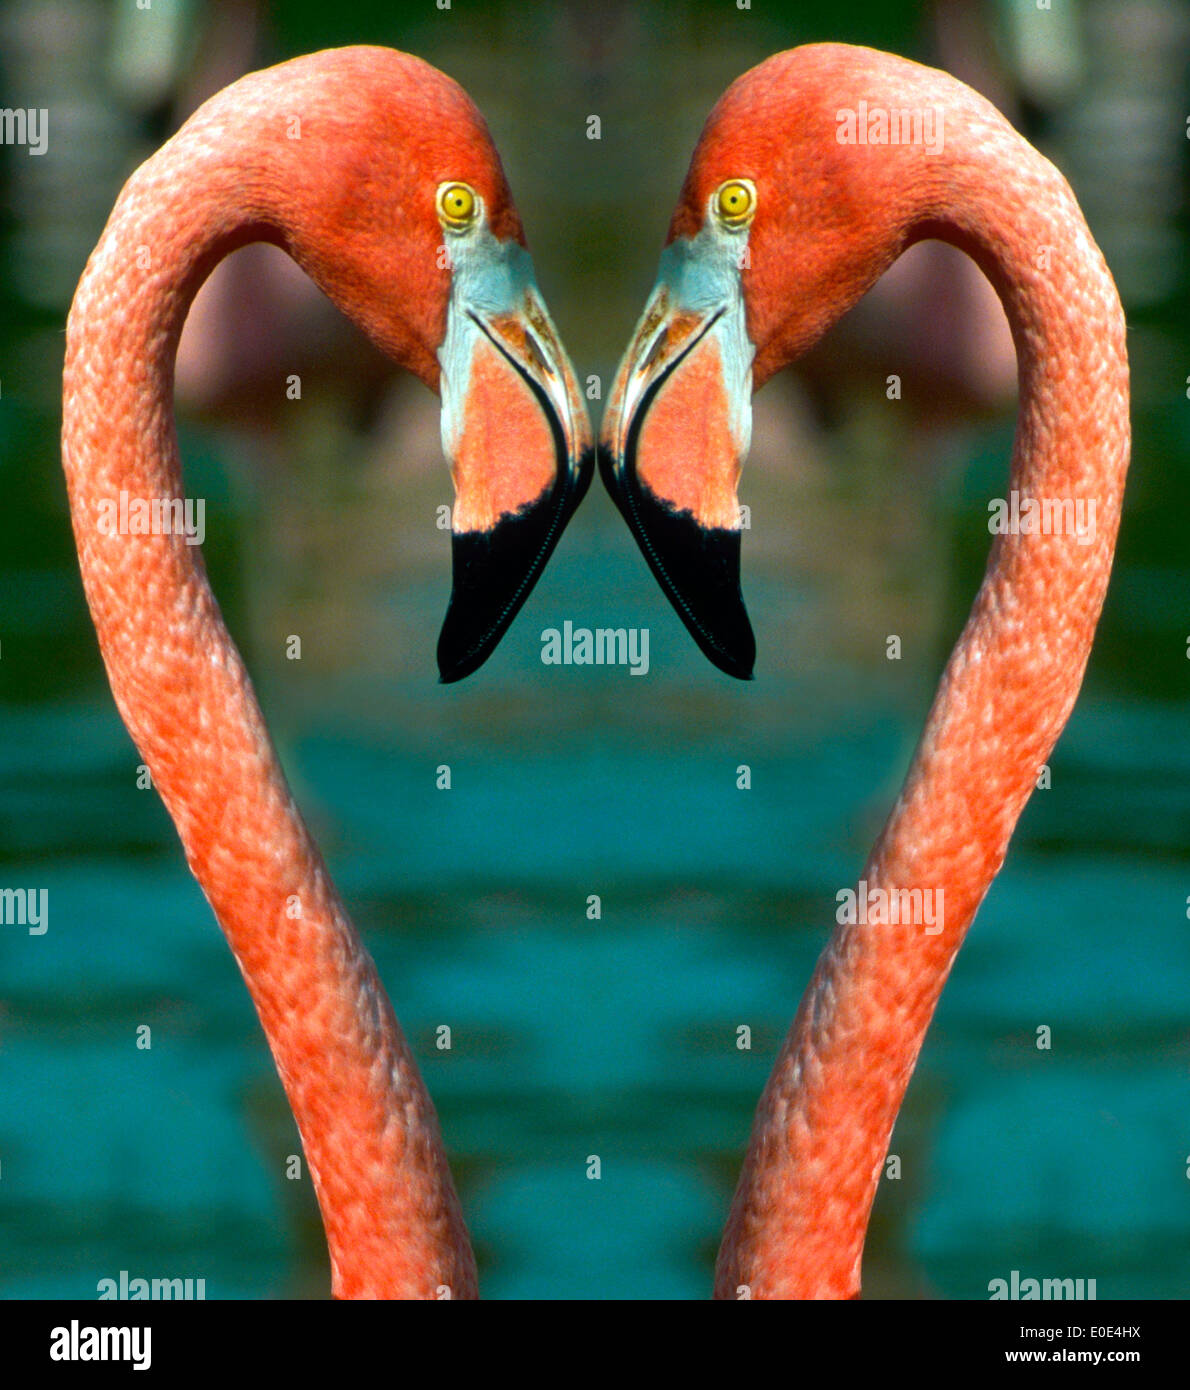 Zwei Flamingos machen die perfekte Liebe Vögel, wie sie in diesem Bild digital verändert die Form eines Herzens mit ihren markanten Kopf und Hals bilden. Stockfoto